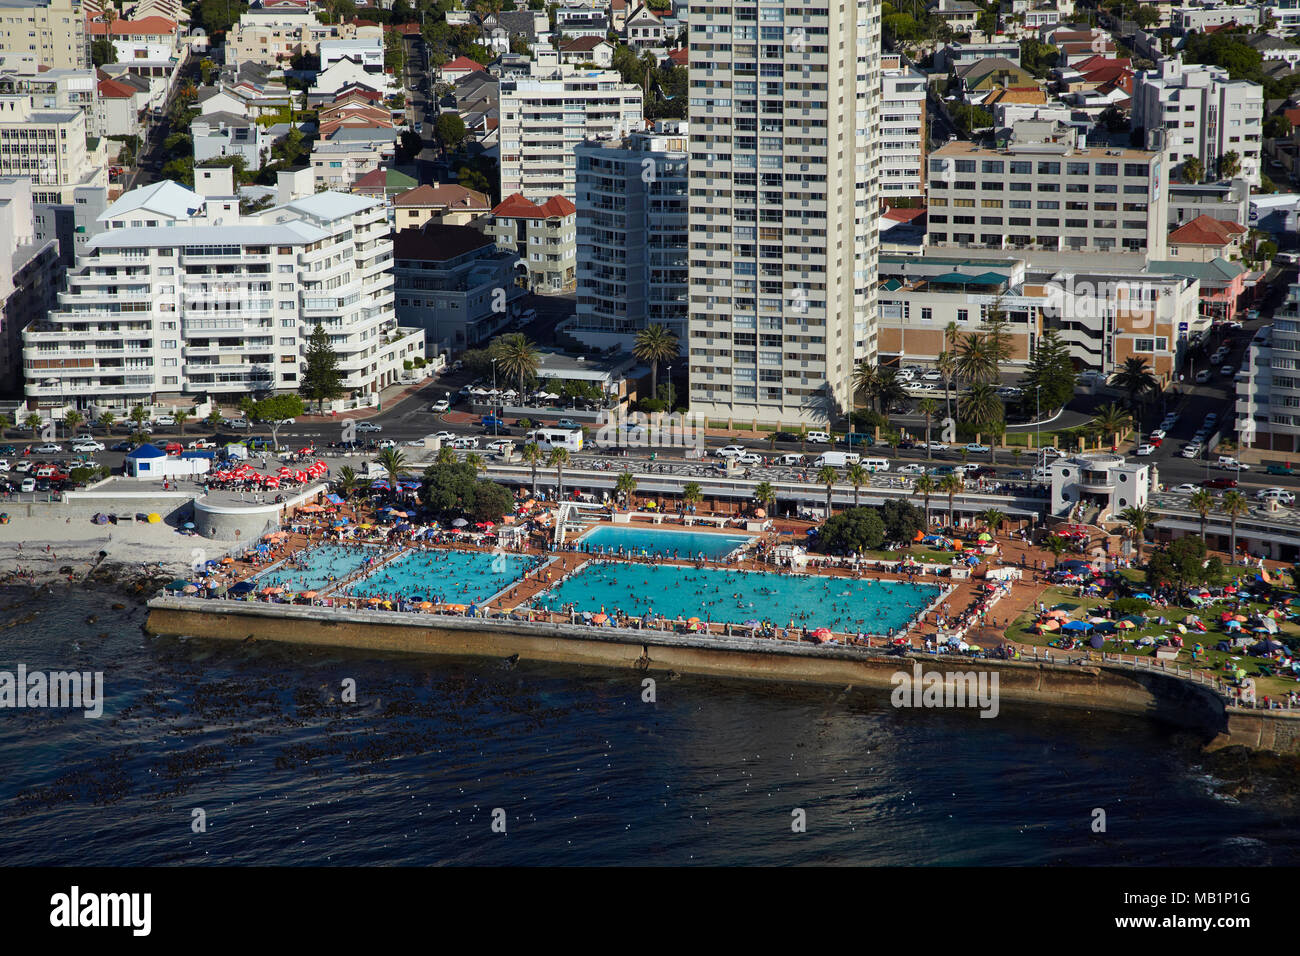 Sea Point piscine, Sea Point, Cape Town, Afrique du Sud - vue aérienne Banque D'Images